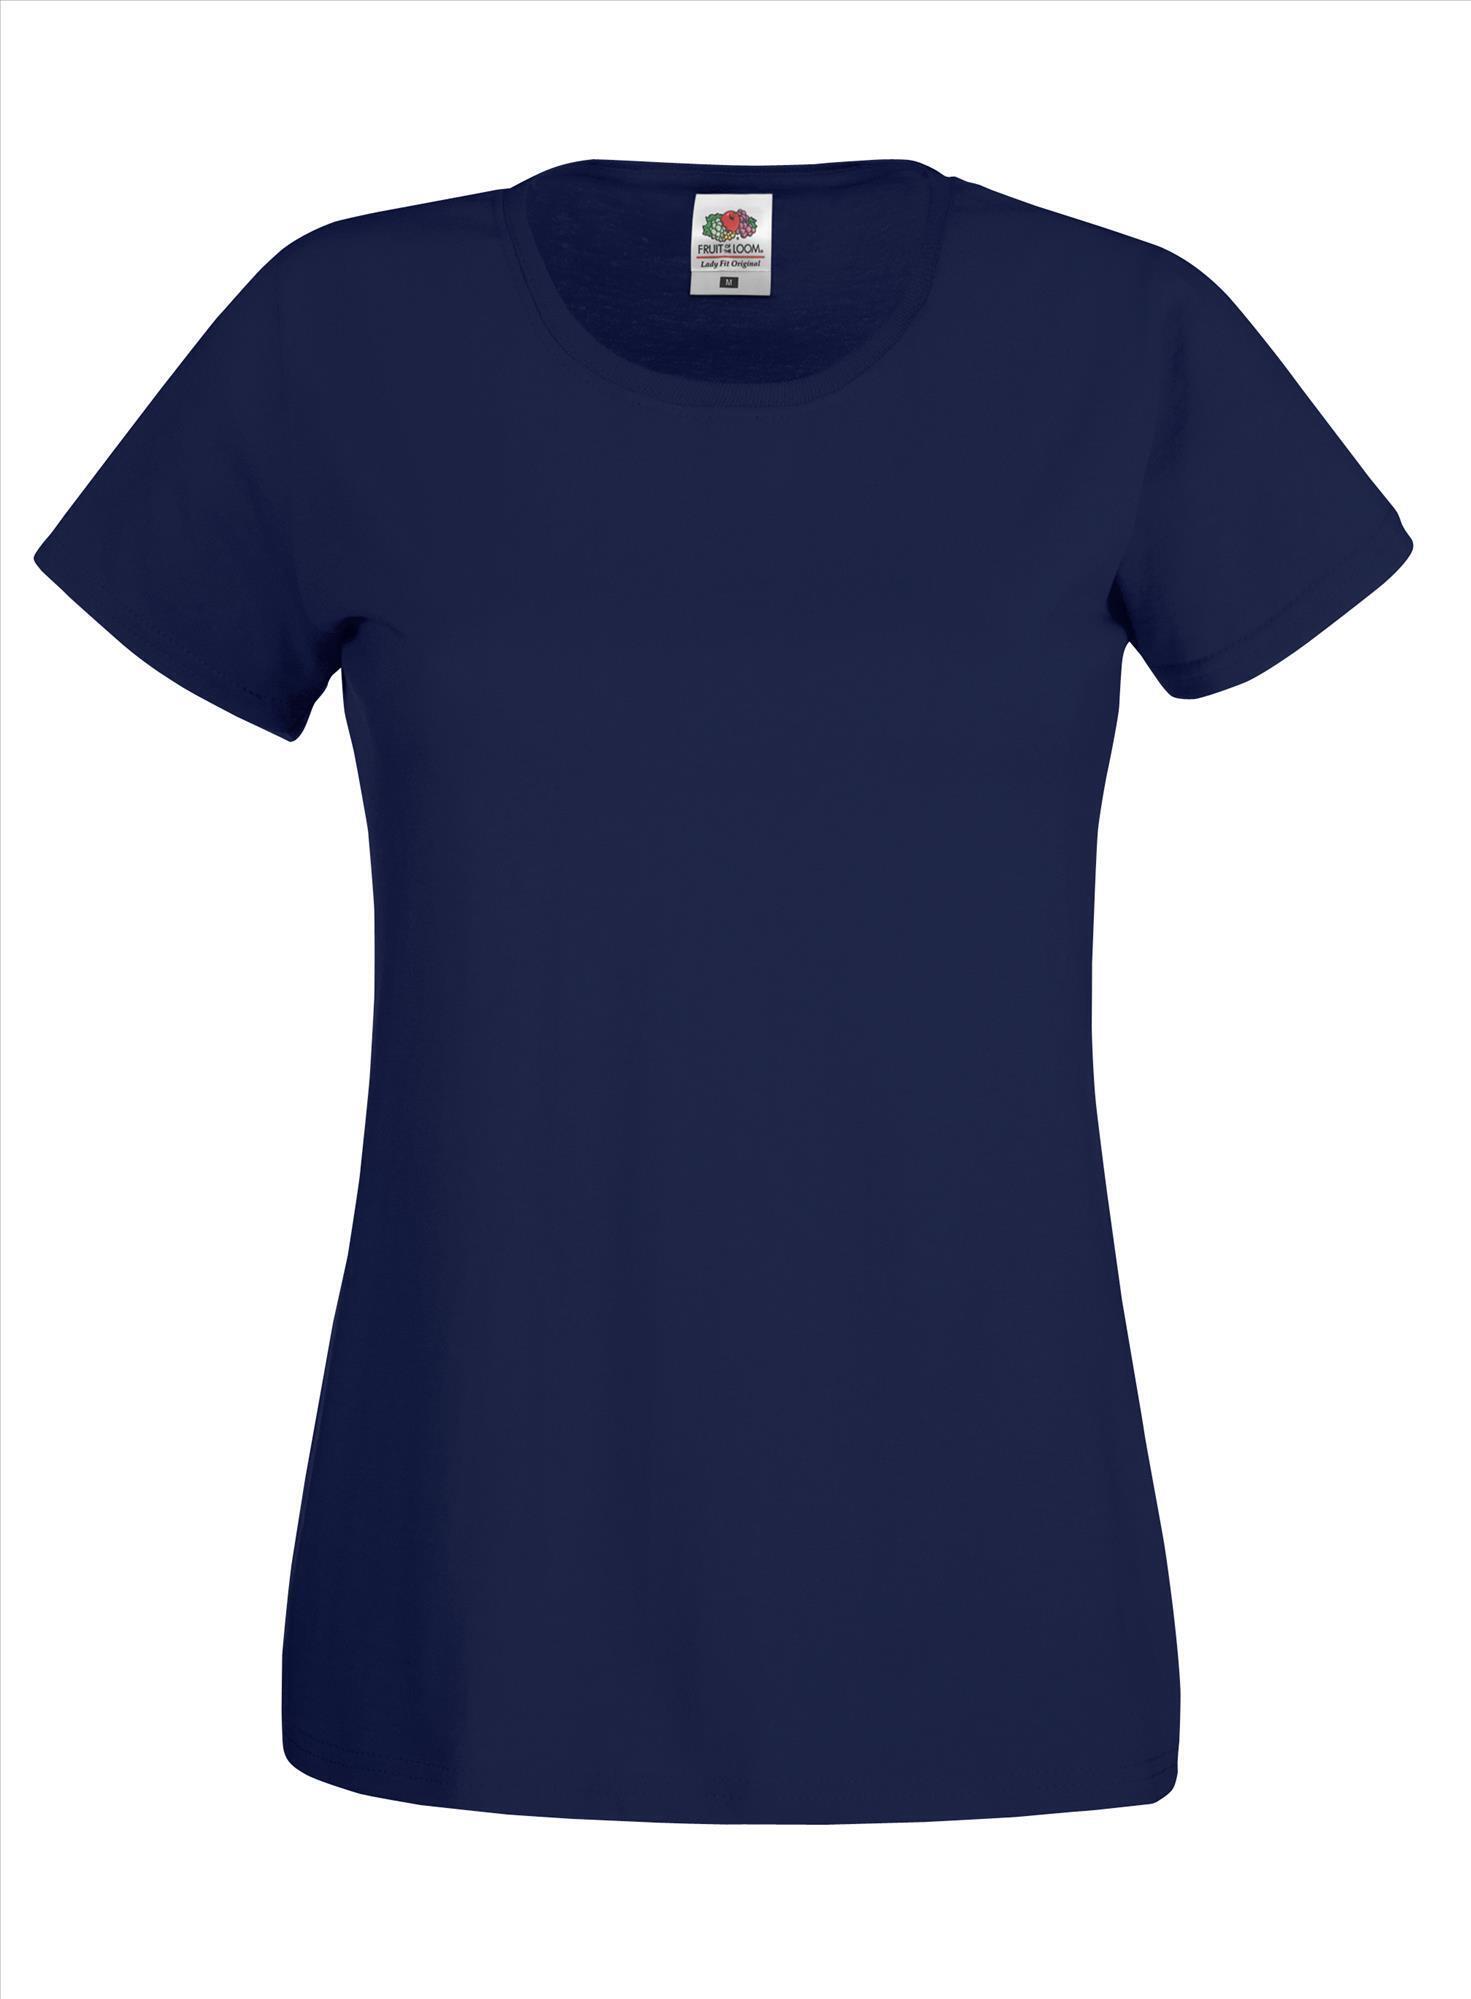 T-shirt diep Marine blauw voor dames te bedrukken te personaliseren